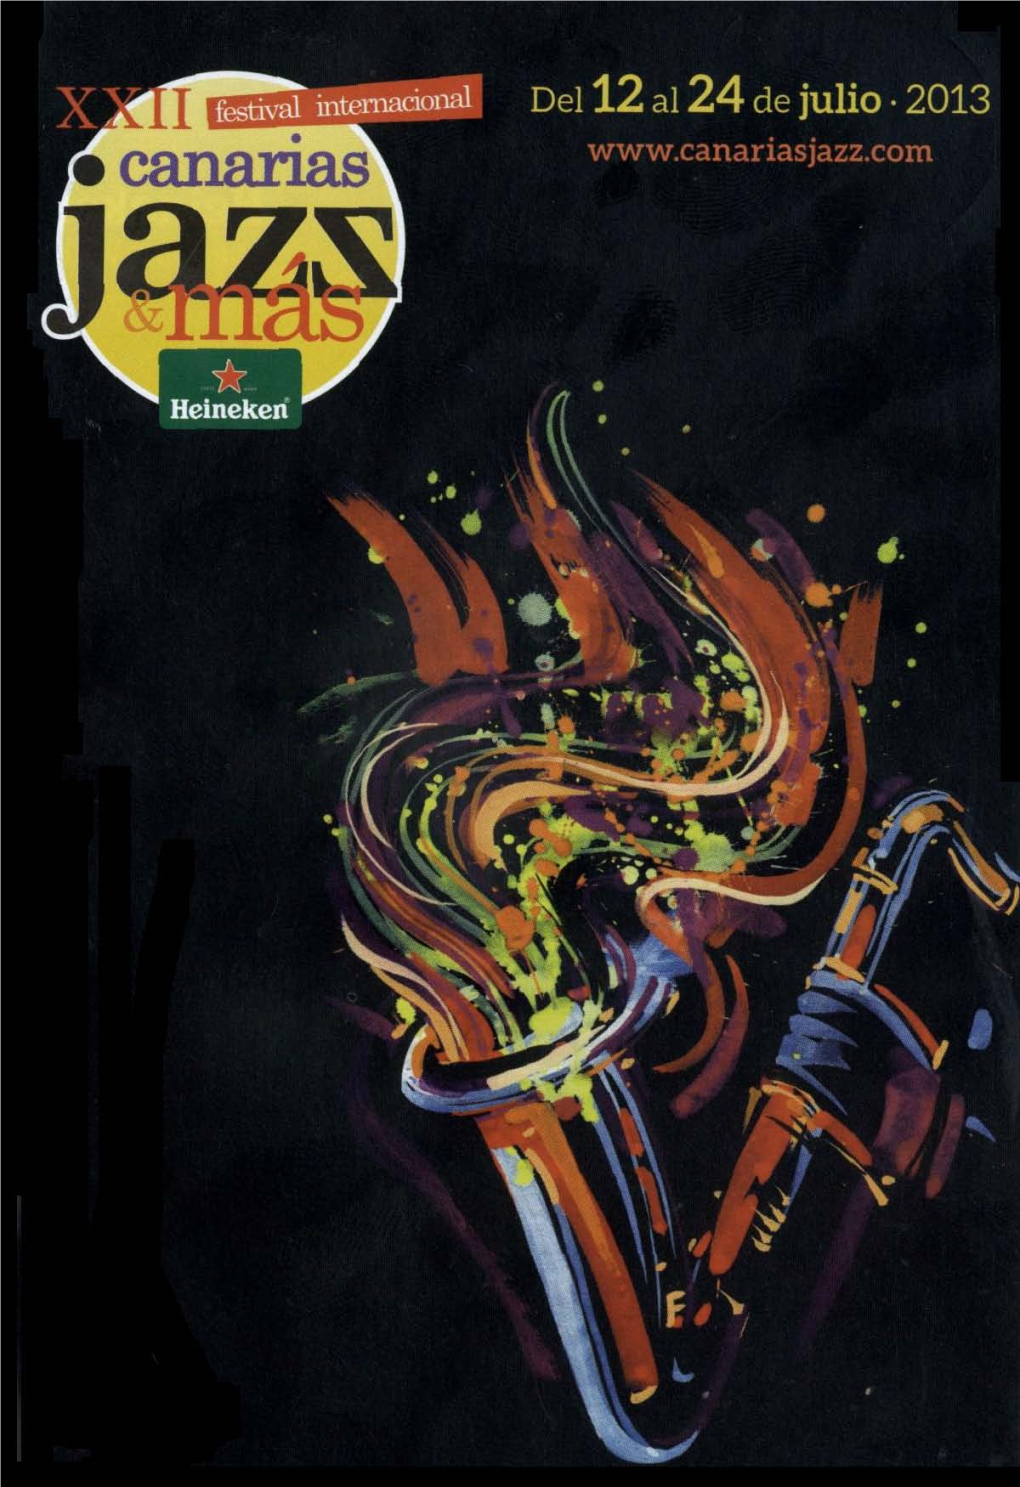 XXII Festival Internacional Canarias Jazz &